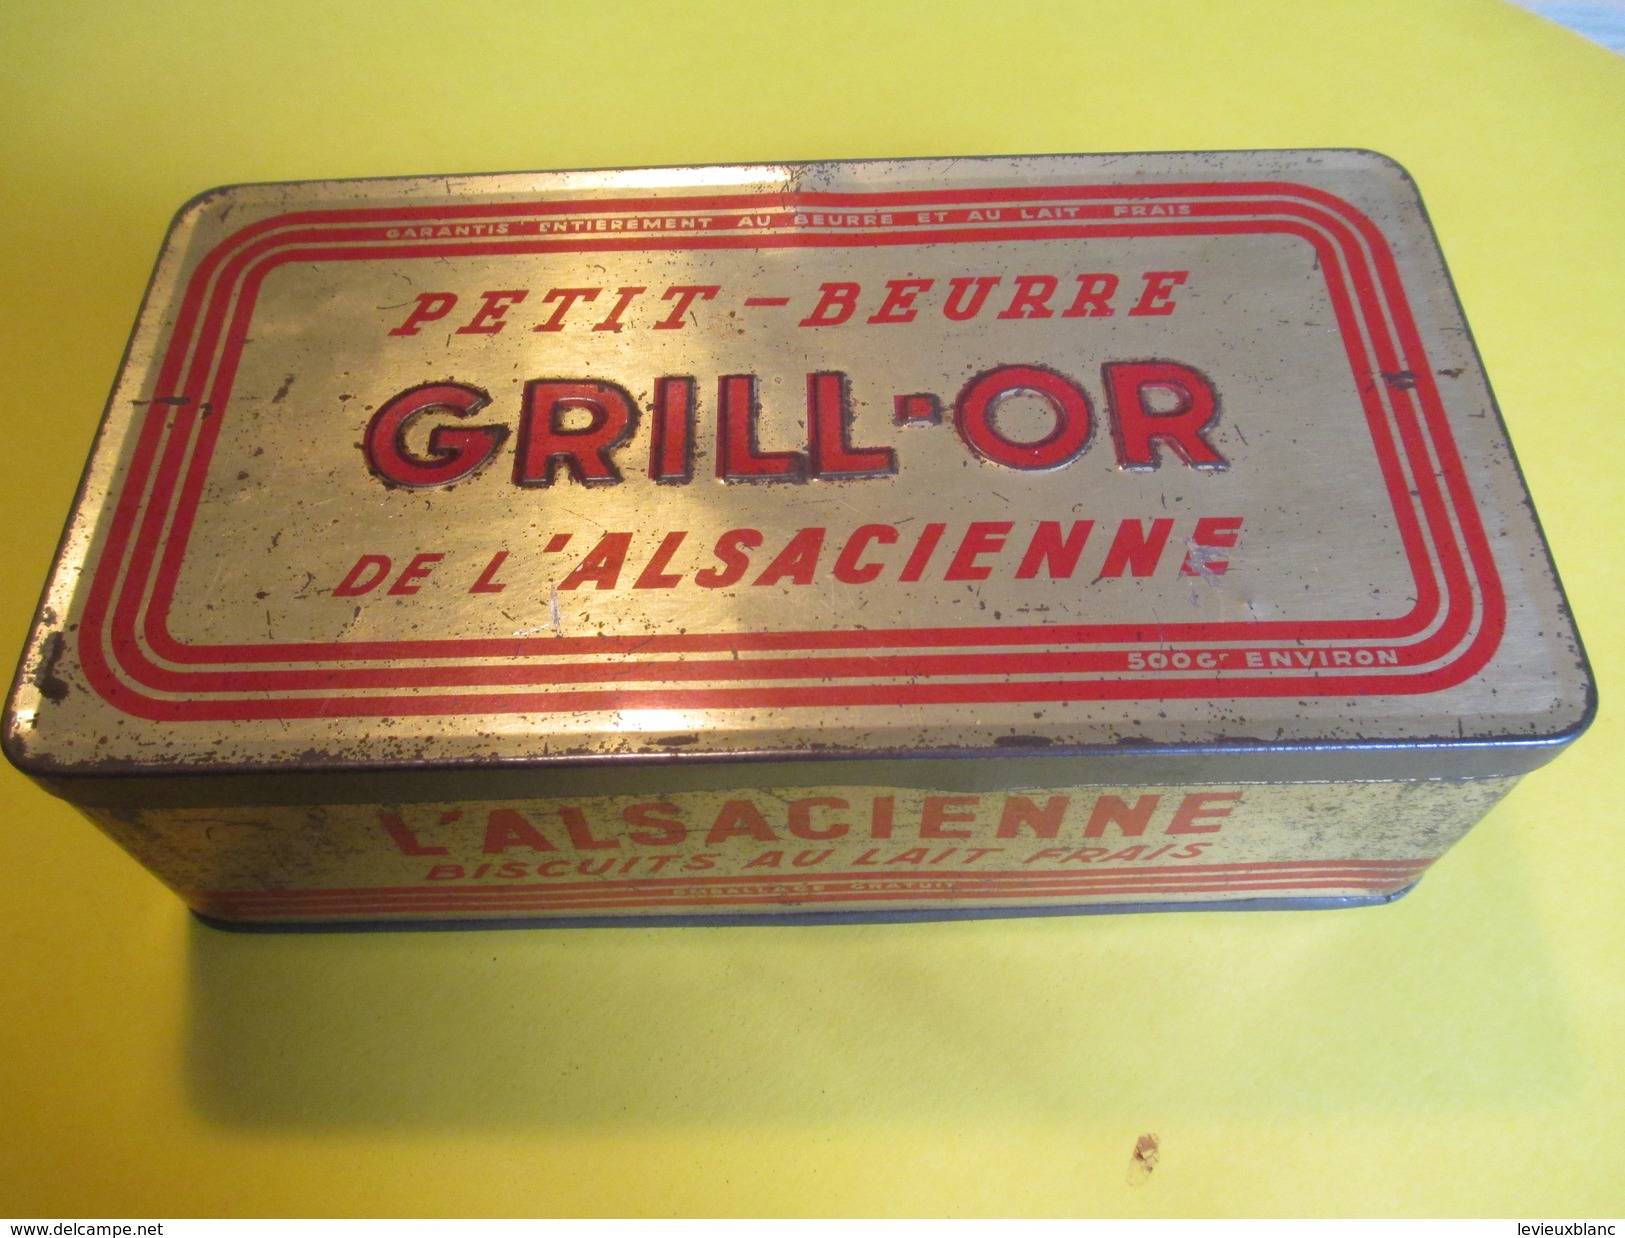 Boite En Fer/Alimentaire/Petit-Beurre GRILL-OR De L'Alsacienne/Biscuits Au Lait Frais/France/Vers1930-50     BFPP104 - Cajas